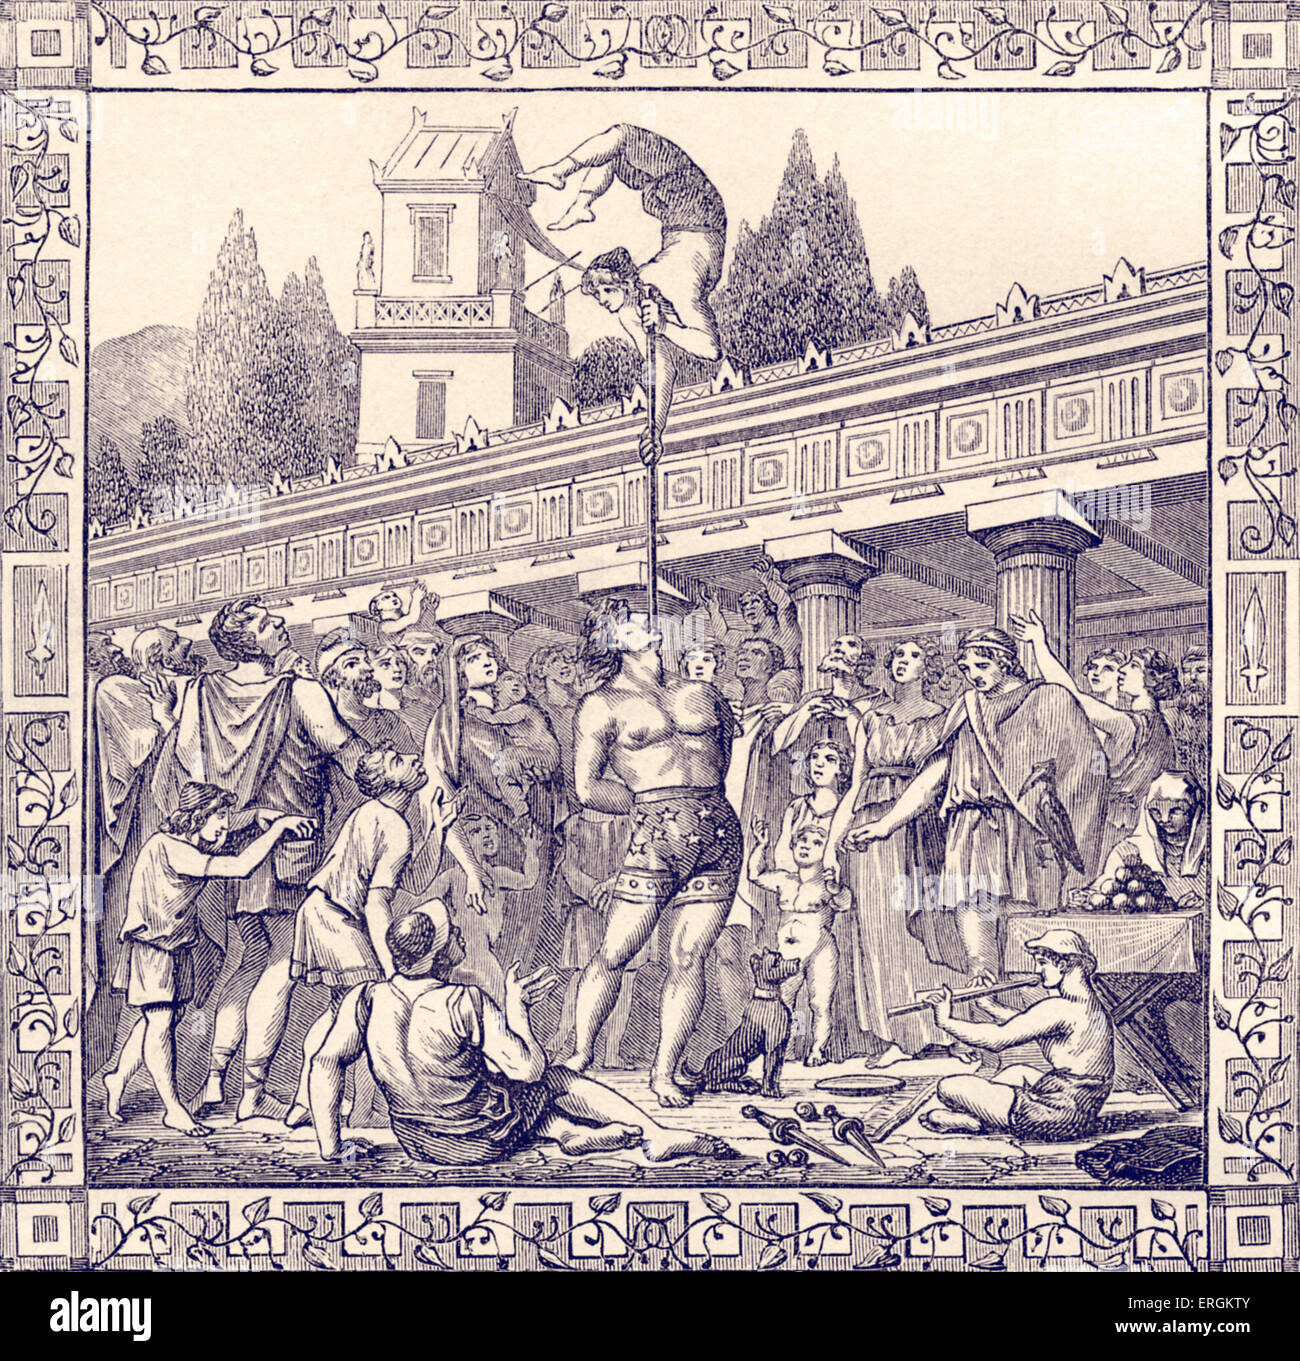 Akrobaten im alten Rom - Gravur. Veröffentlichte 1885. Französisch: 'Equilibristes Dans l' Antiquité ". Stockfoto